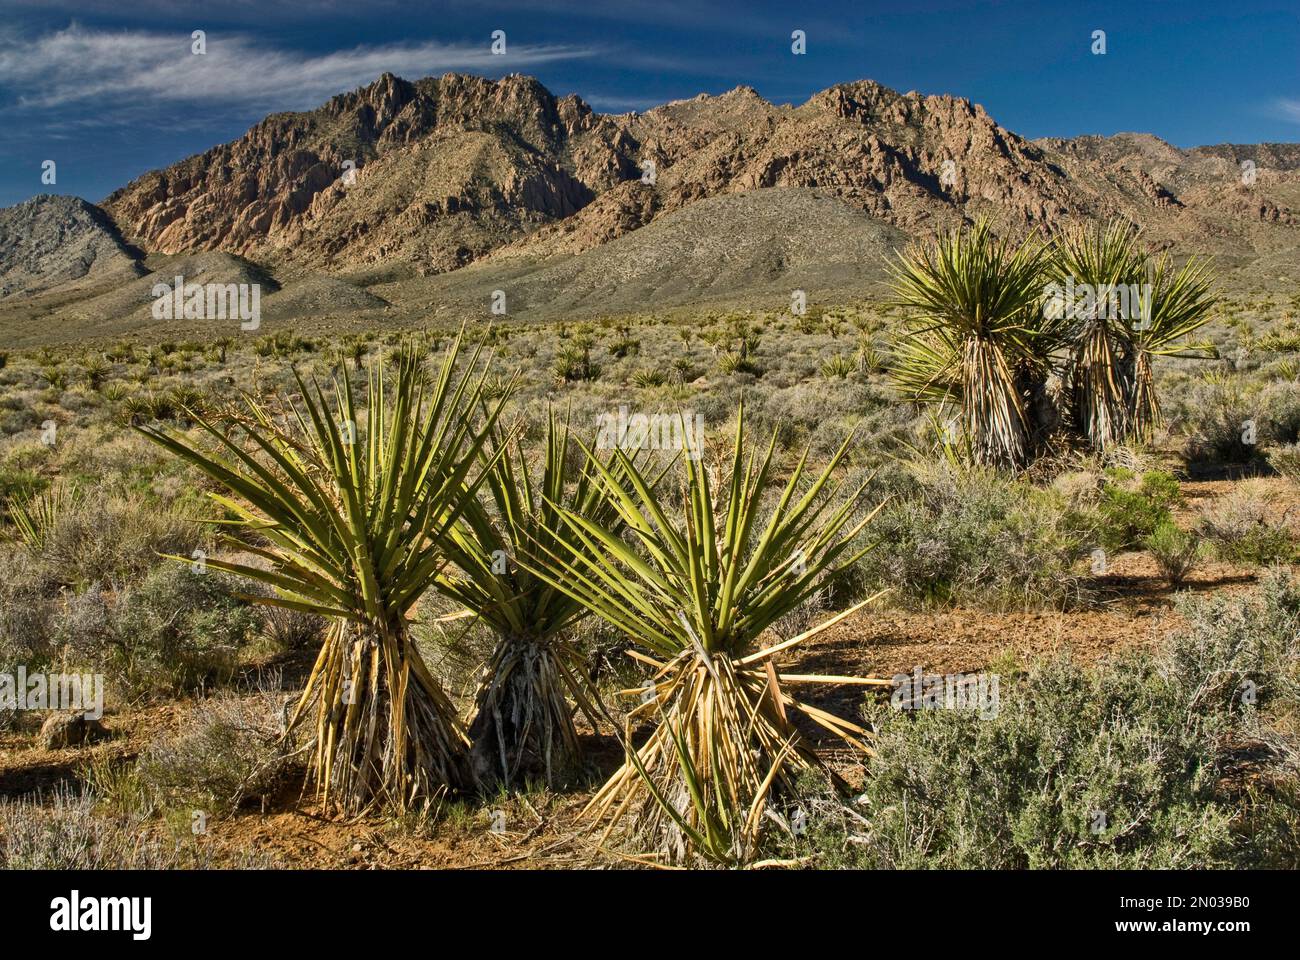 Mojave yucca conosciuto anche come Spanish Dagger, Kingston Range Mountains nel deserto di Mojave, California, USA Foto Stock